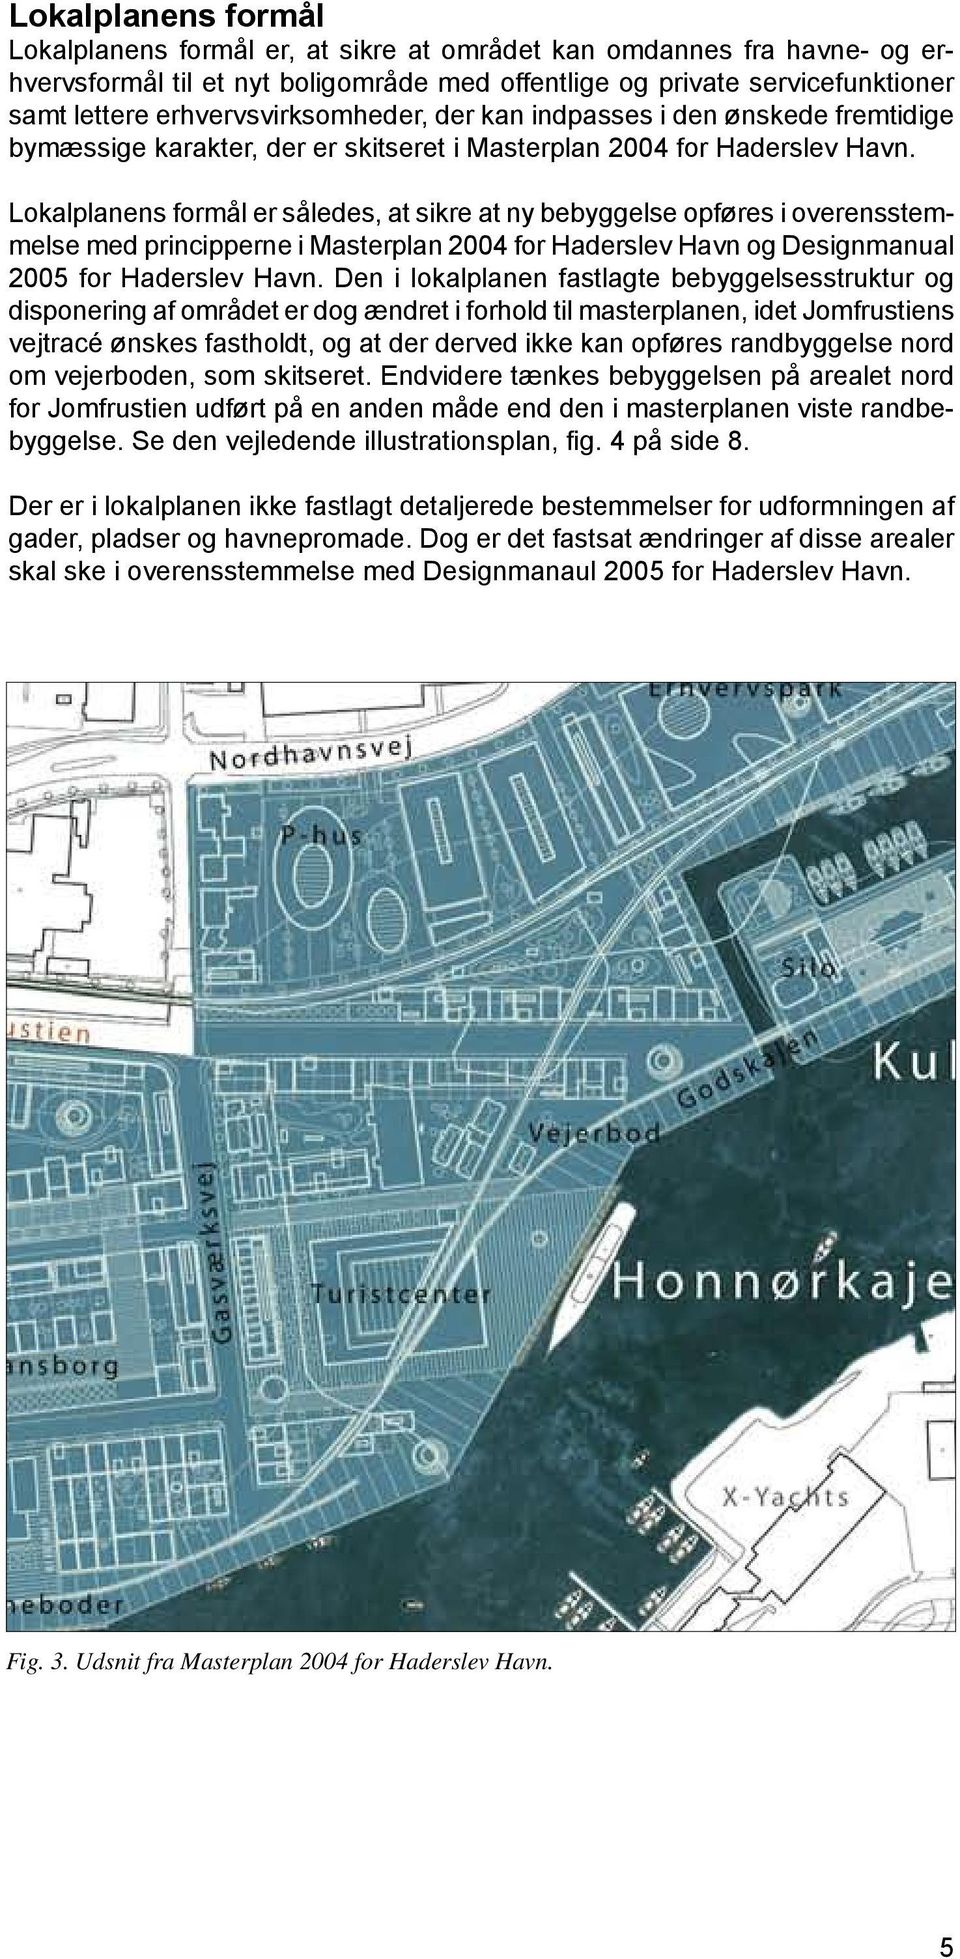 Lokalplanens formål er således, at sikre at ny bebyggelse opføres i overensstemmelse med principperne i Masterplan 2004 for Haderslev Havn og Designmanual 2005 for Haderslev Havn.